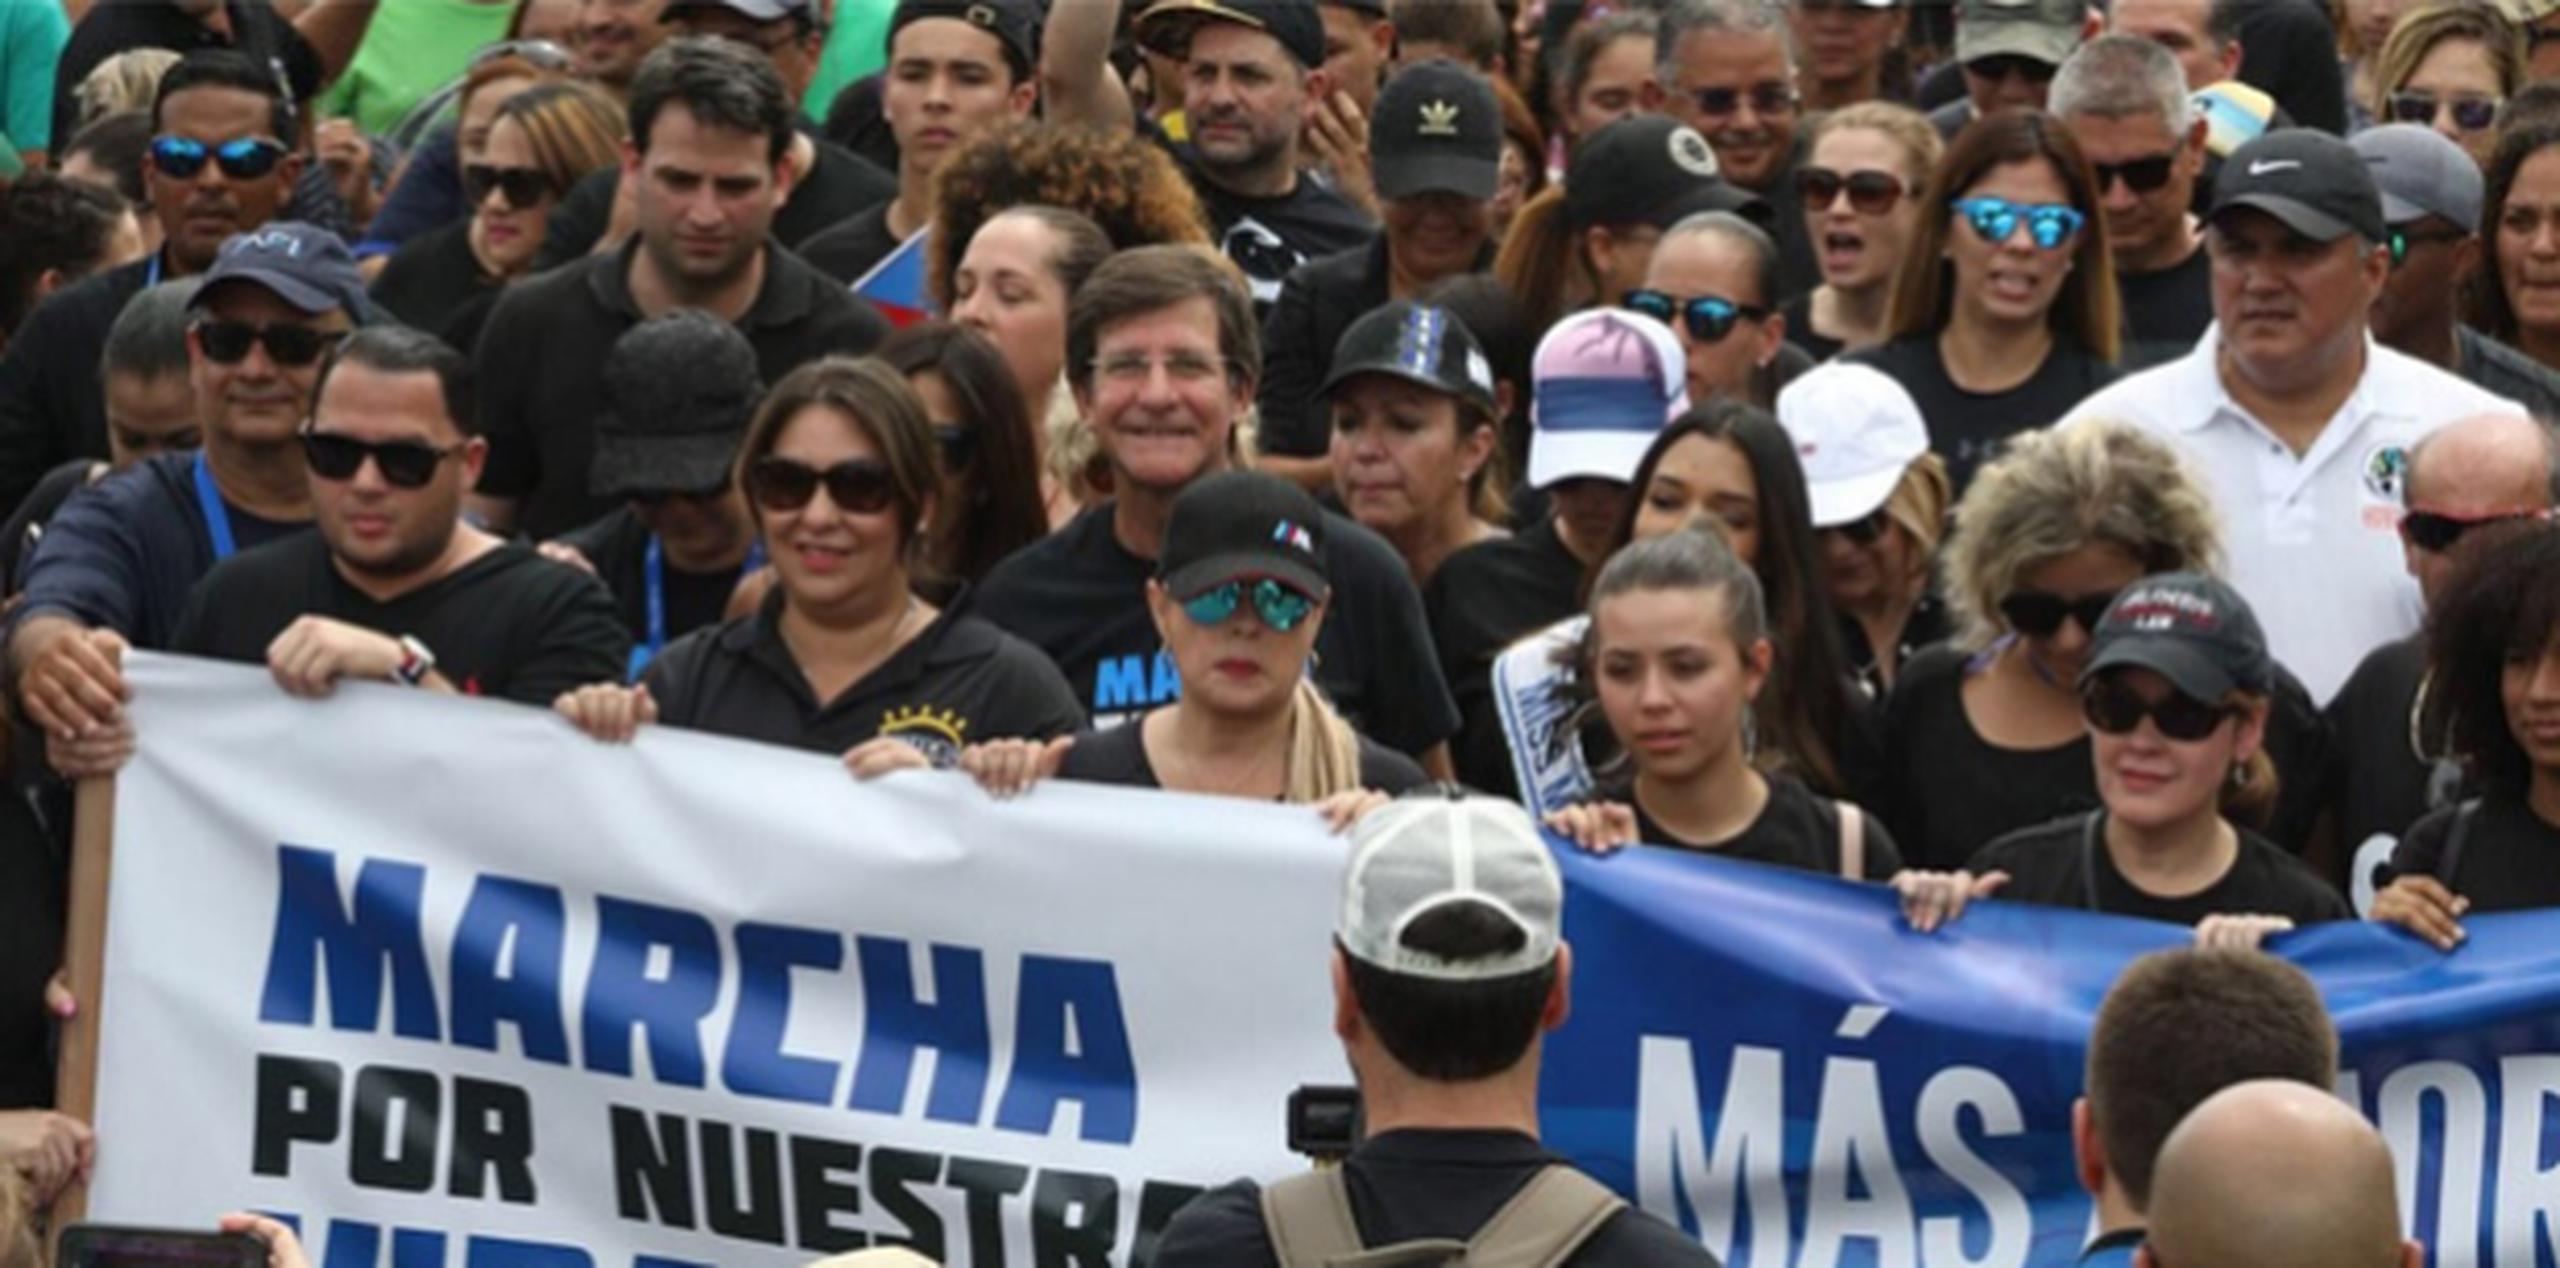 "Marcha Por Nuestras Vidas" en Puerto Rico contó con el apoyo del Departamento de Estado de la isla, así como con la participación de todas las agencias del Gobierno. (Twitter)